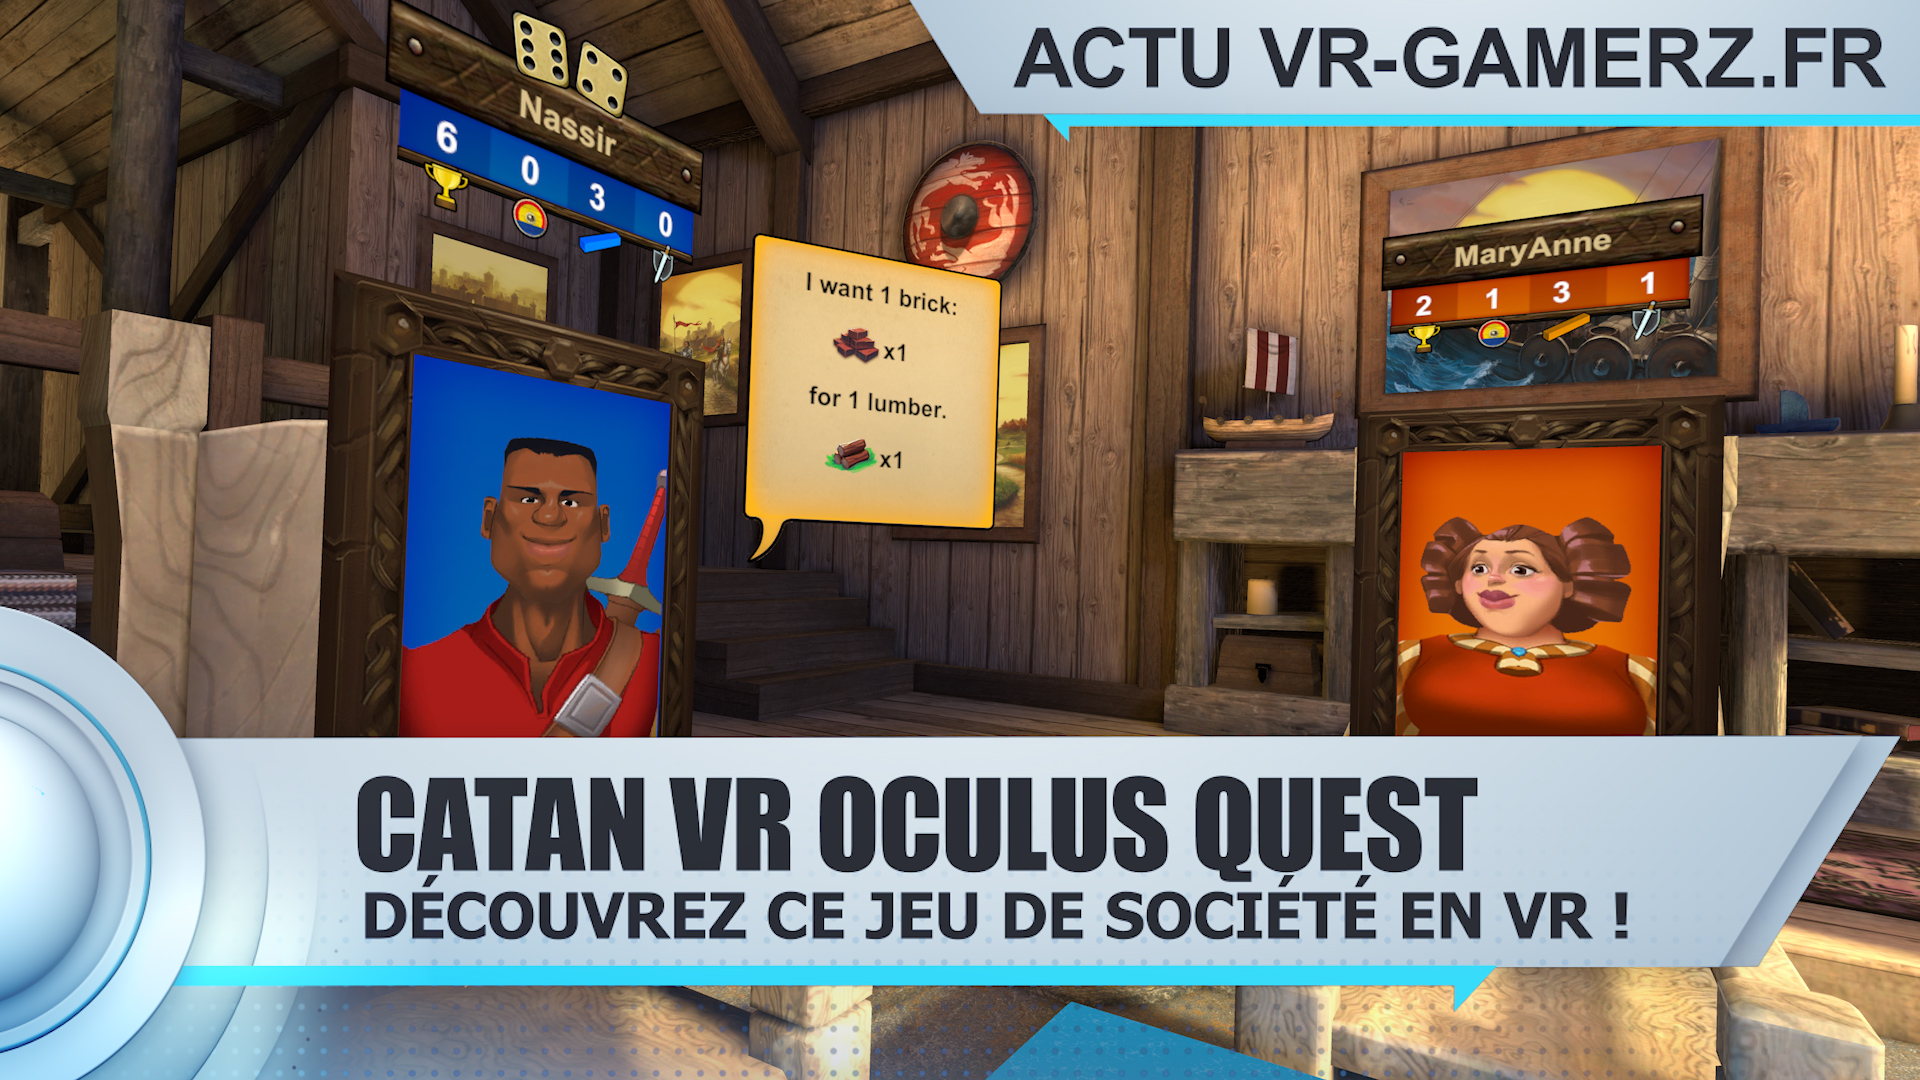 Catan VR est disponible sur Oculus quest ! : Découvrez ce jeu de société en VR !